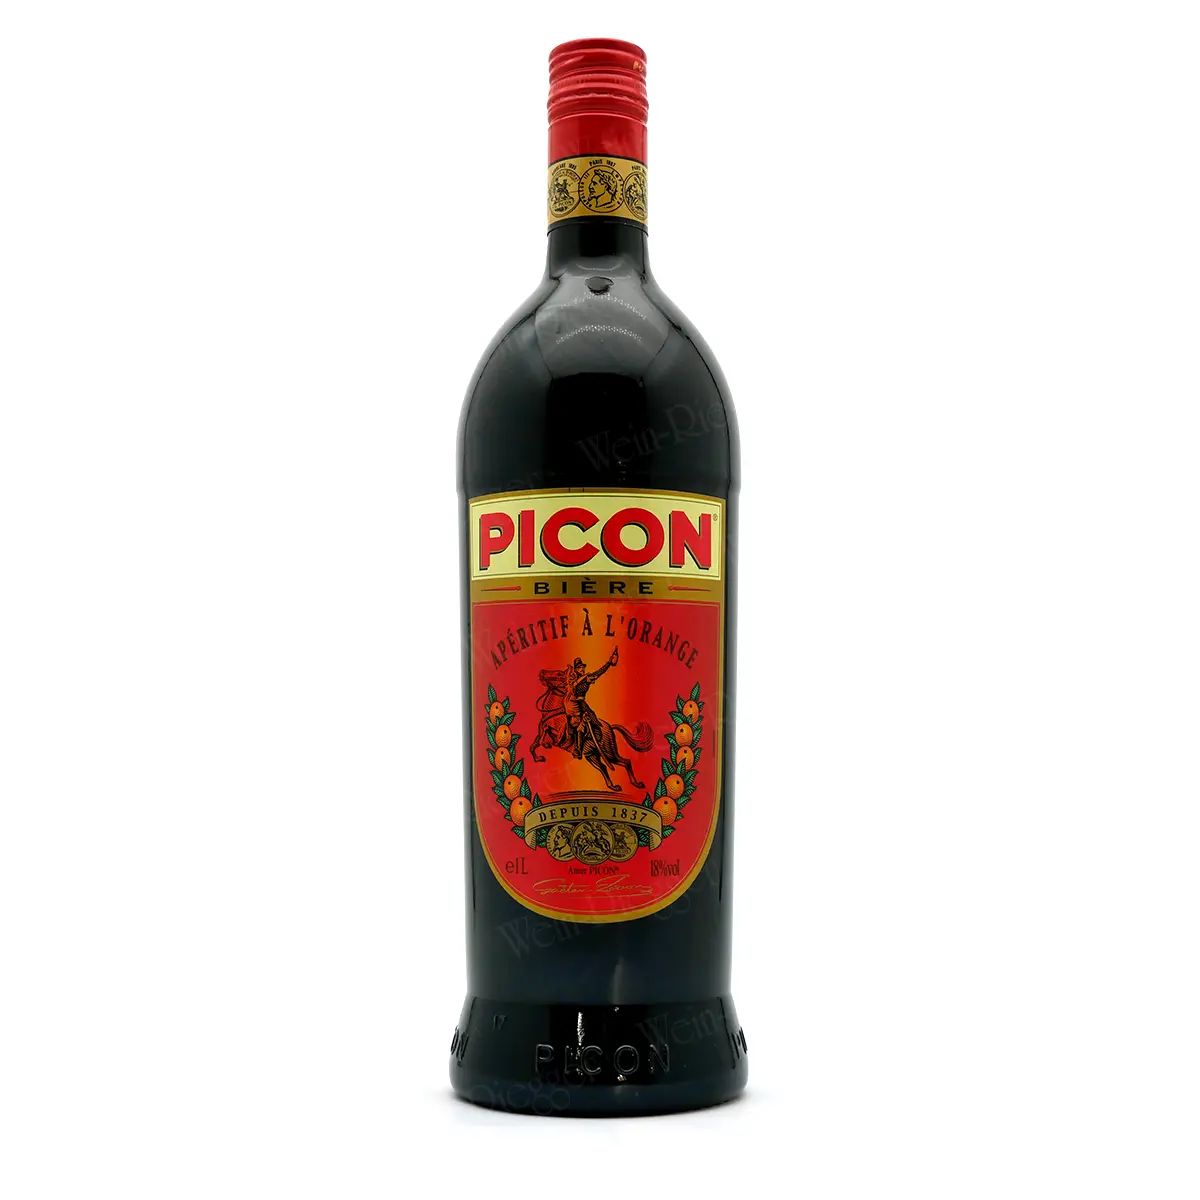 Picon Bière (1 Liter) | Apéritif à l'Orange